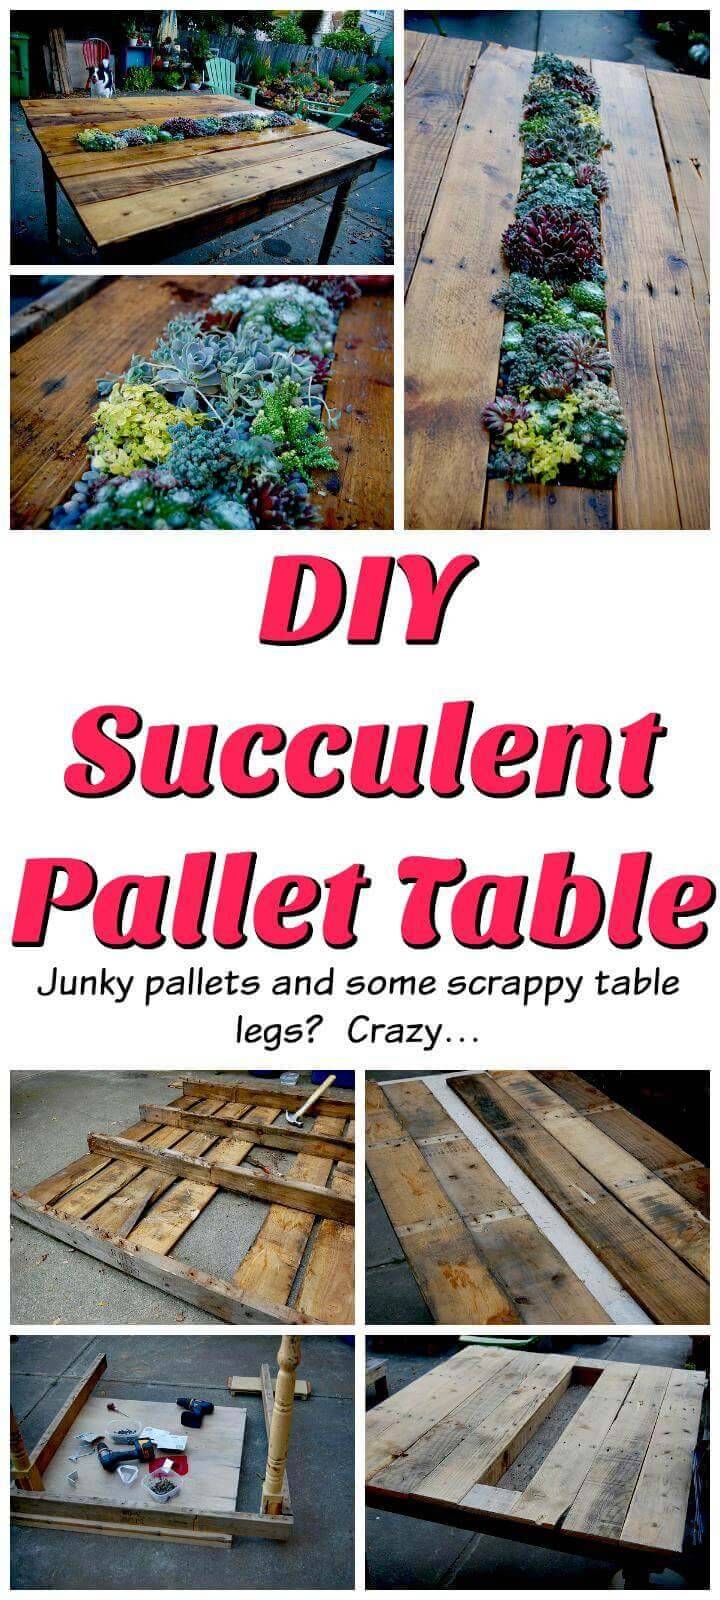 DIY succulent pallet table